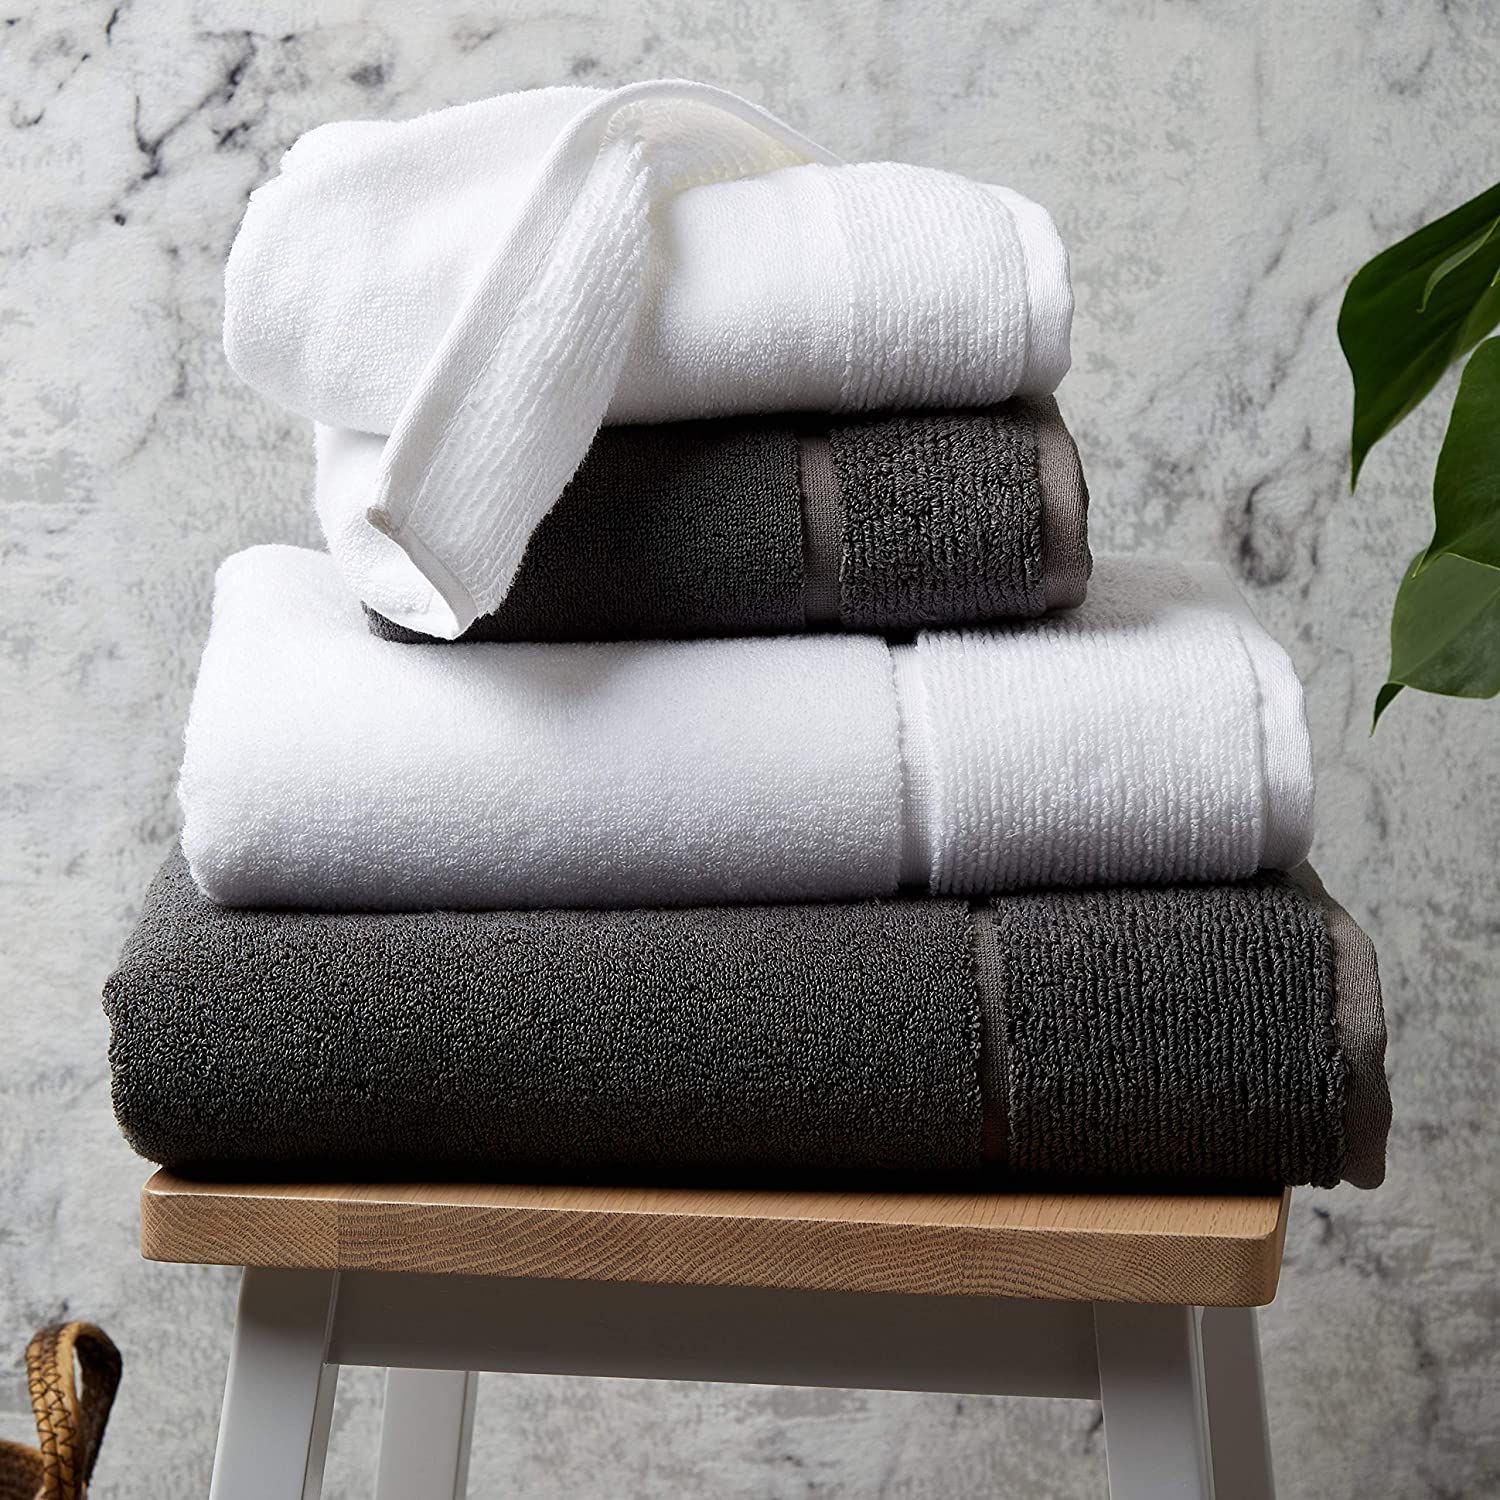 2pcs Pure Cotton Bath Towel Urban Grey & White Color Large Size 70 x140 Cm 350 GSM